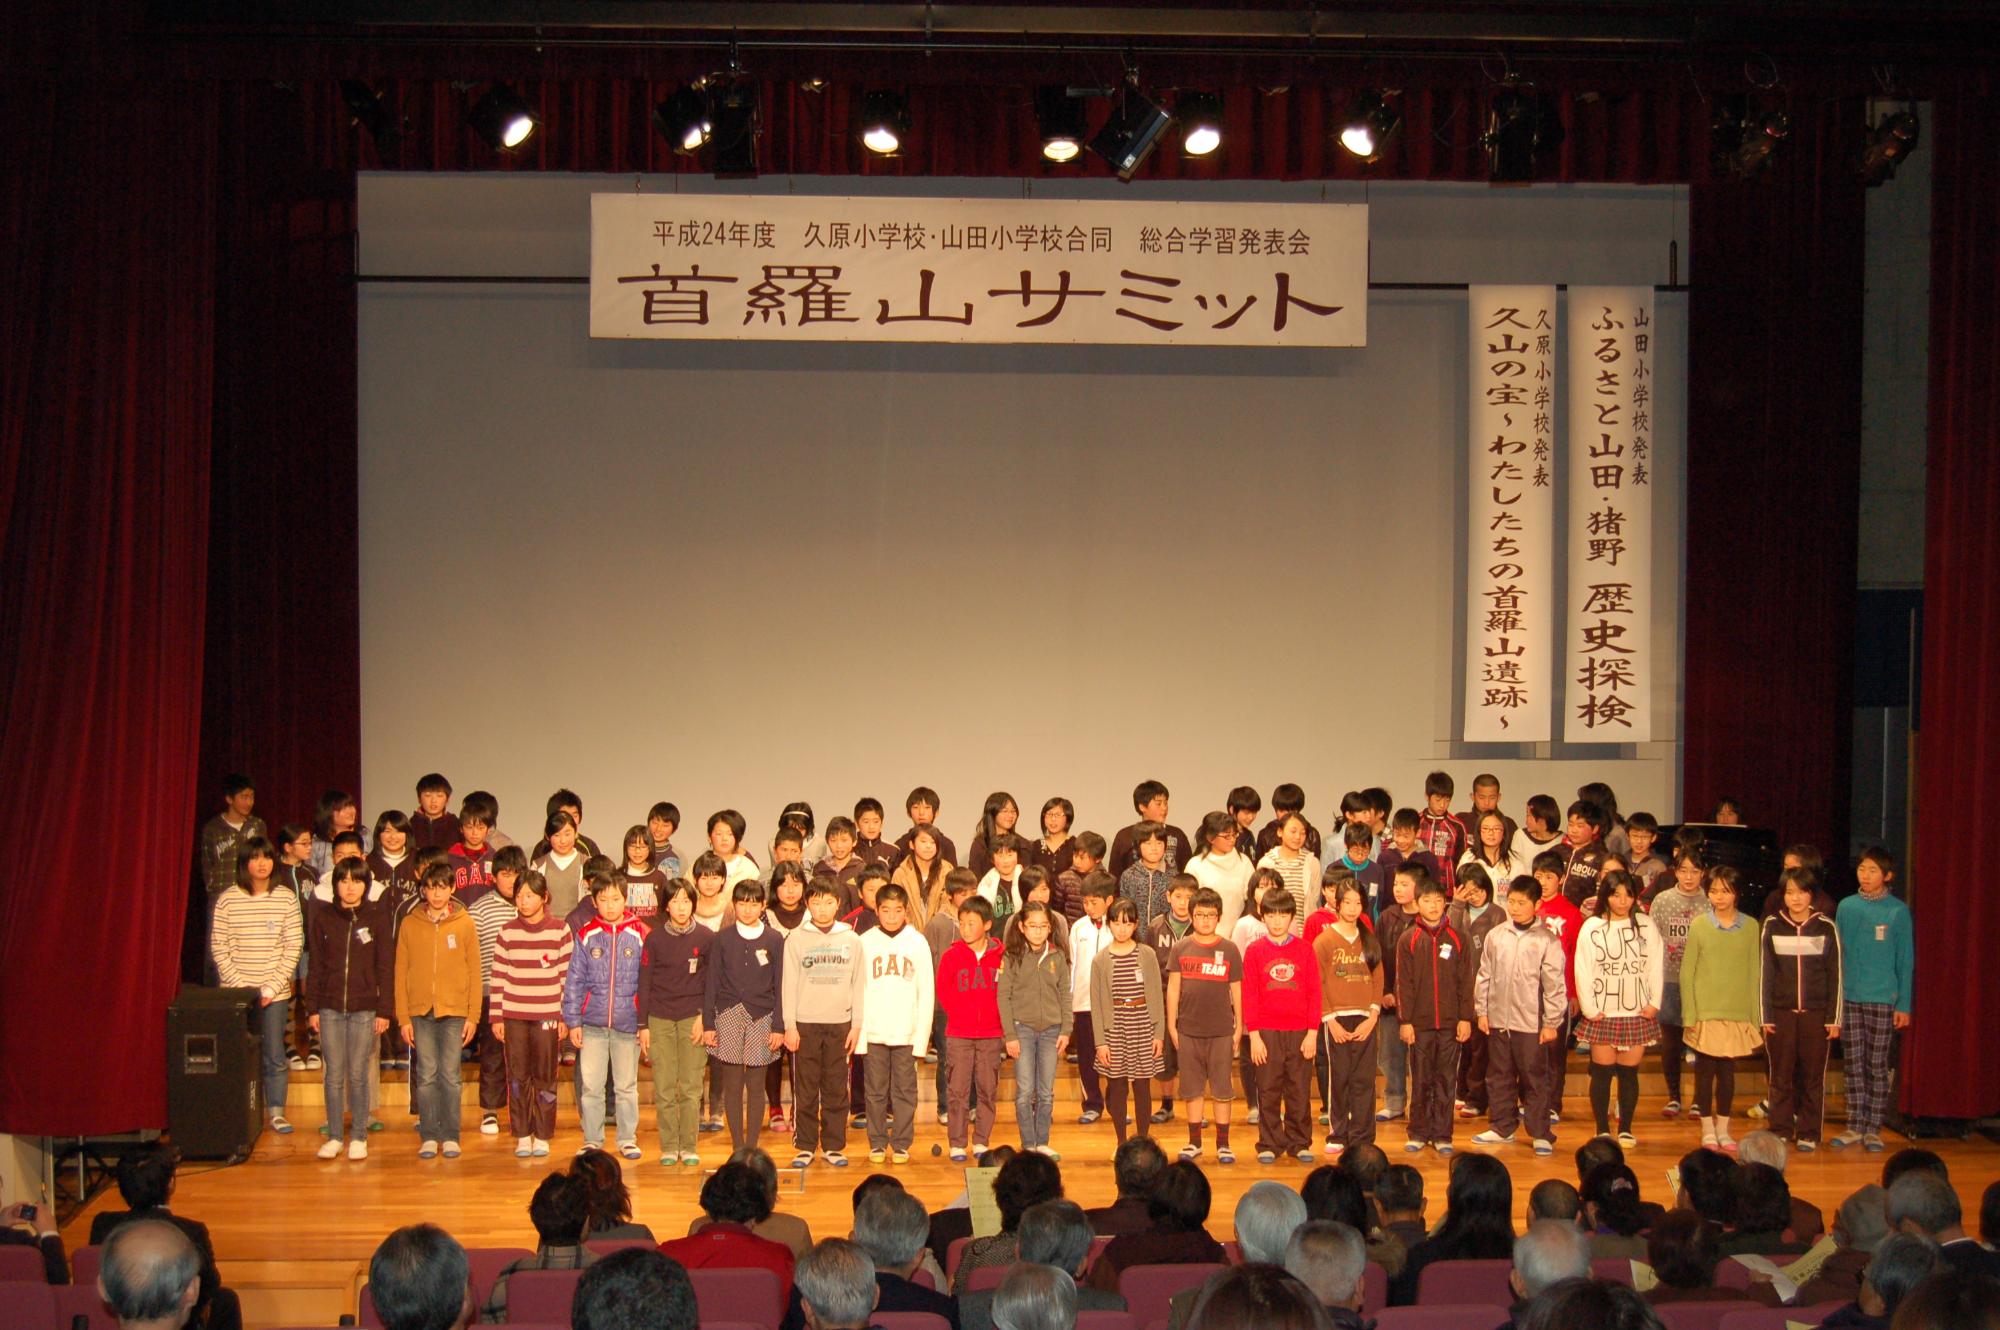 「首羅山サミット」と書かれた屋内のステージで並んで発表する子供たちと、客席で見ている大人達の写真